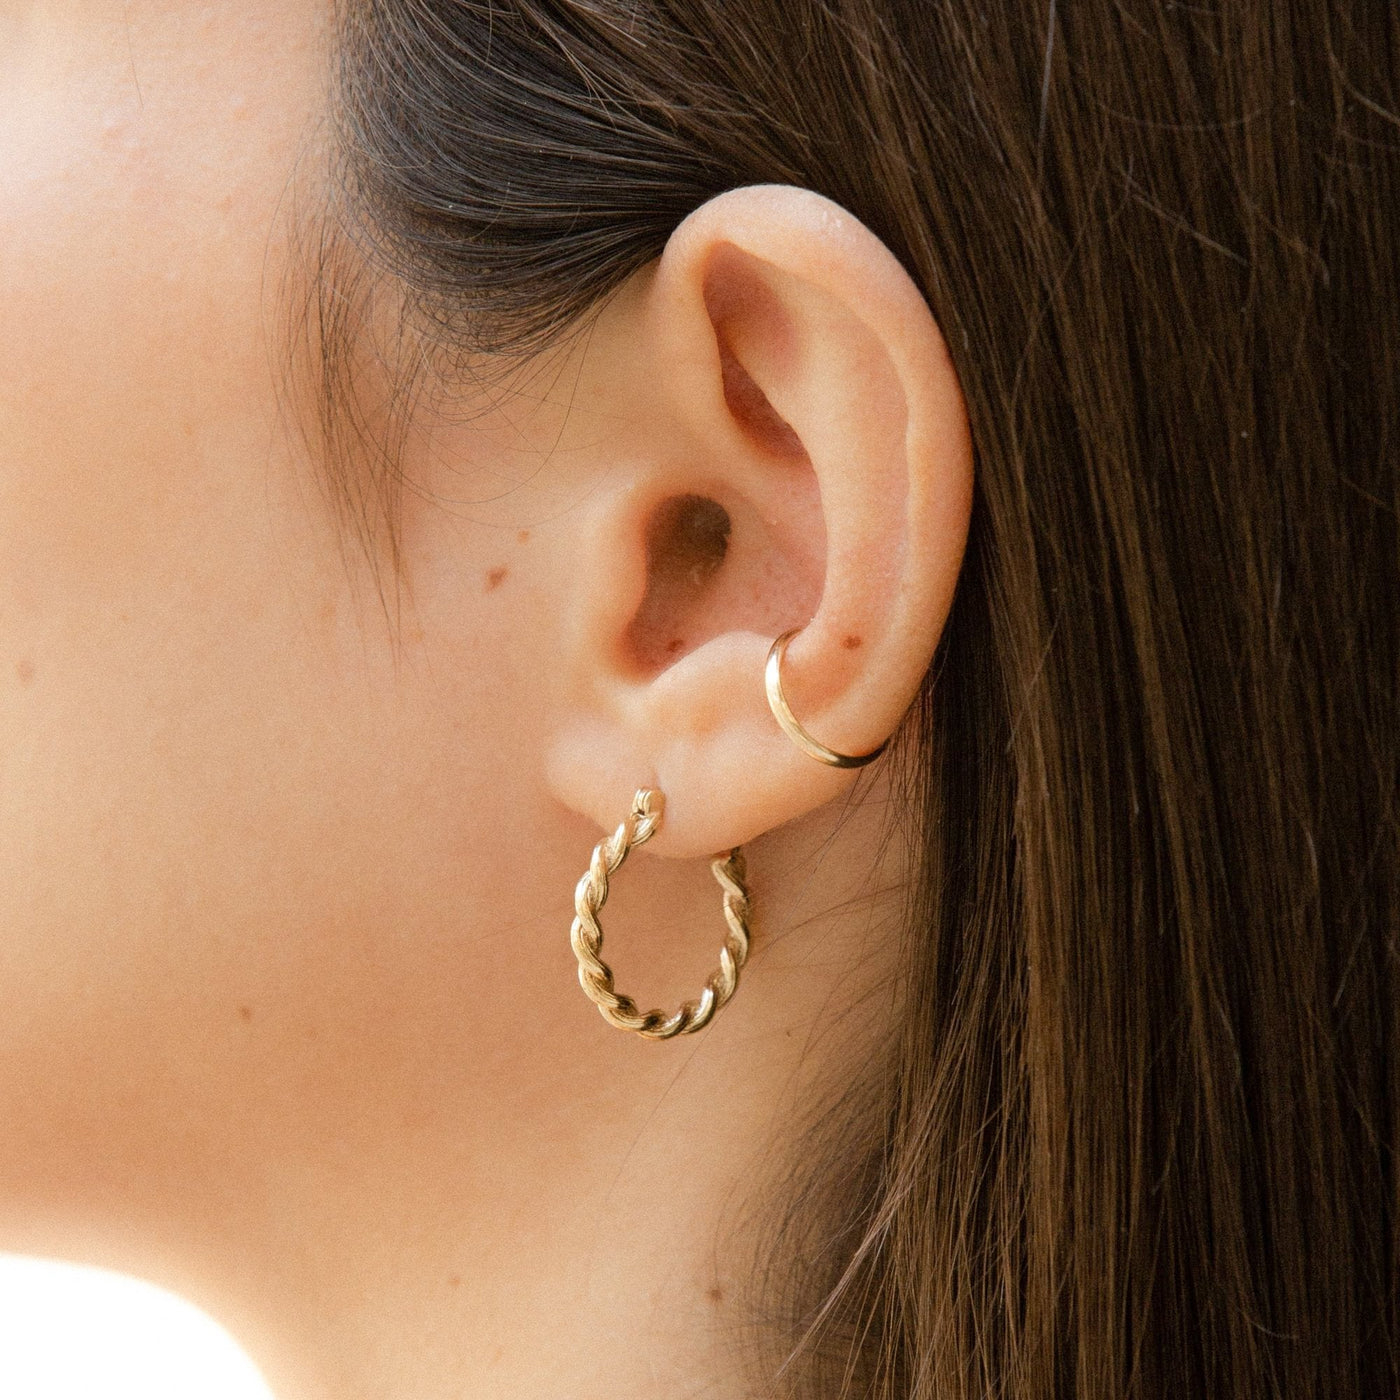 Twist Hoop Earrings by Simple & Dainty Jewelry